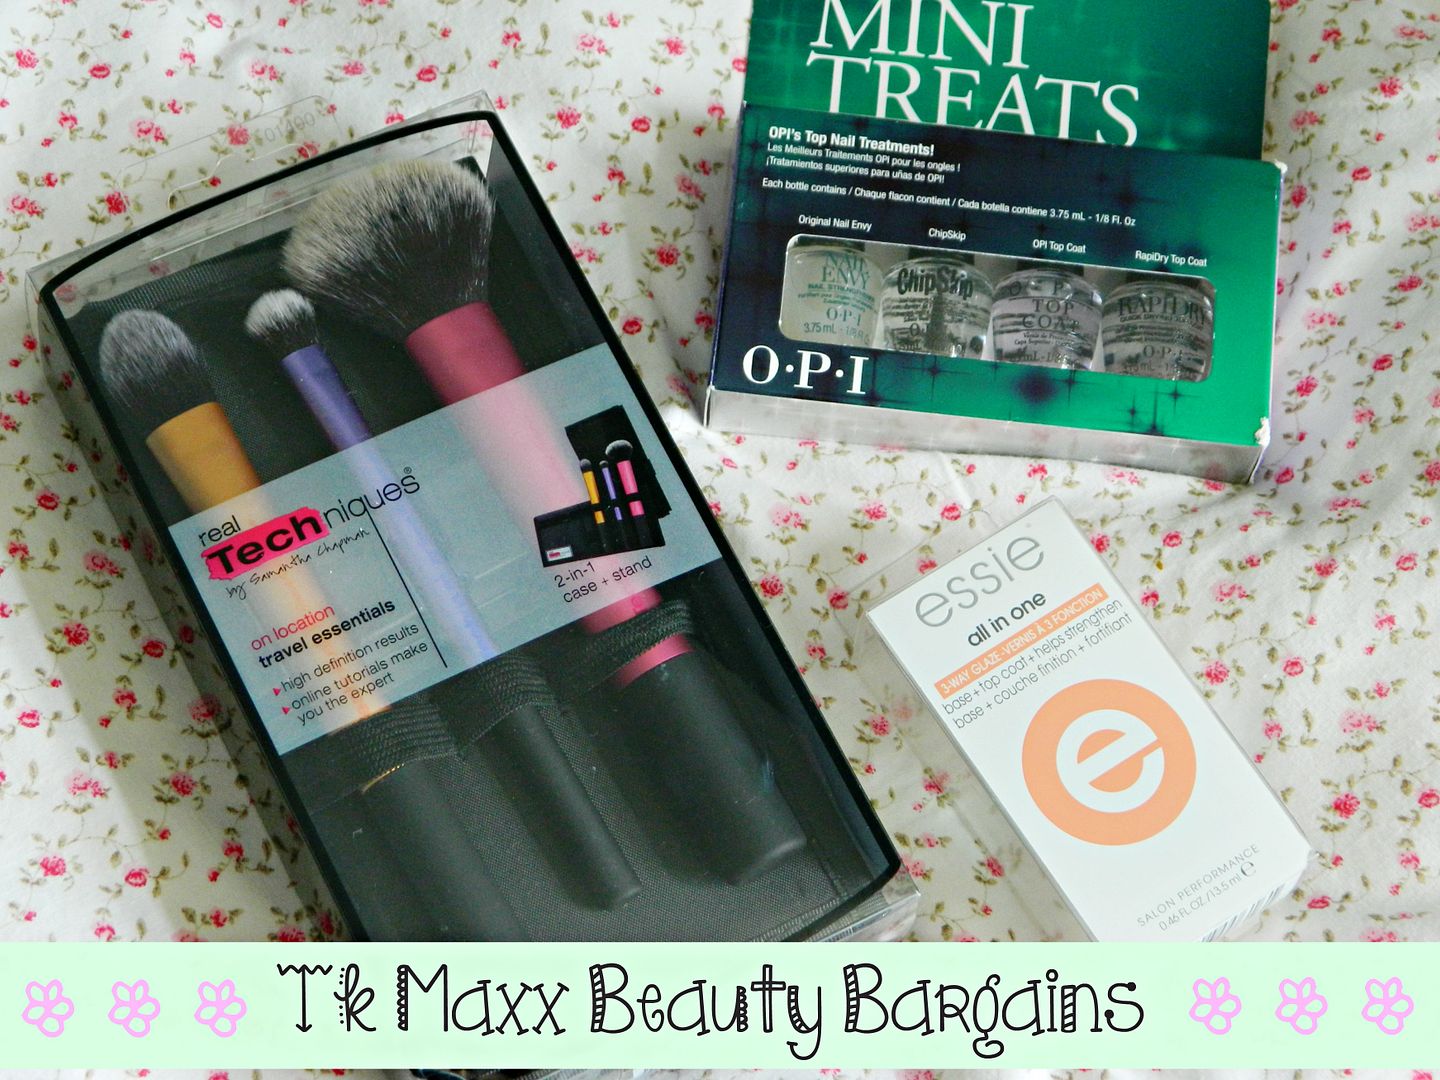 TK Maxx Beauty Bargains Haul Belle Amie UK Beauty Fashion Lifestyle Blog